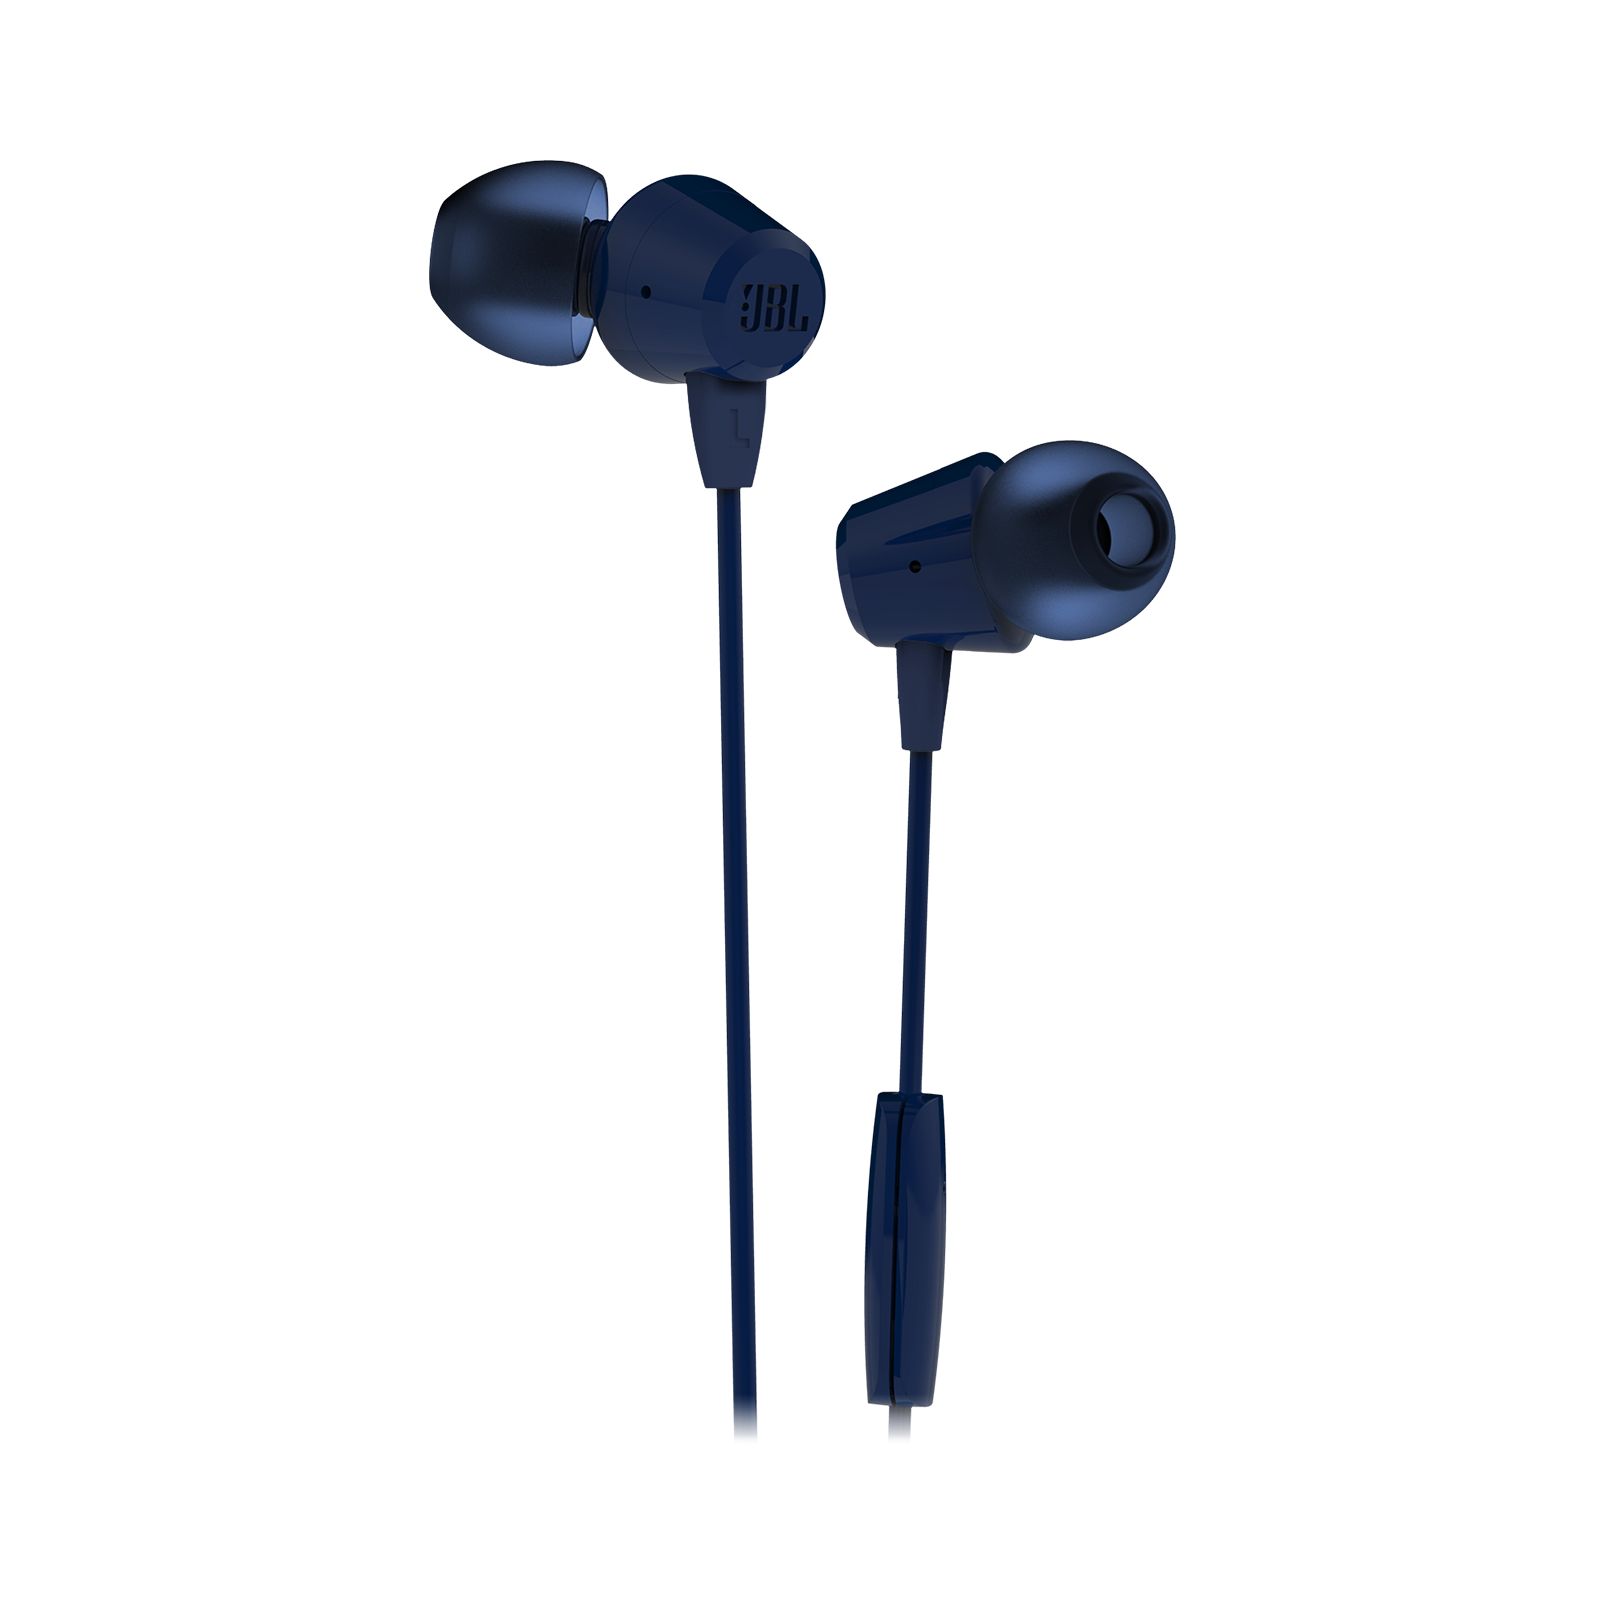 In-Ear Headphones Free PNG